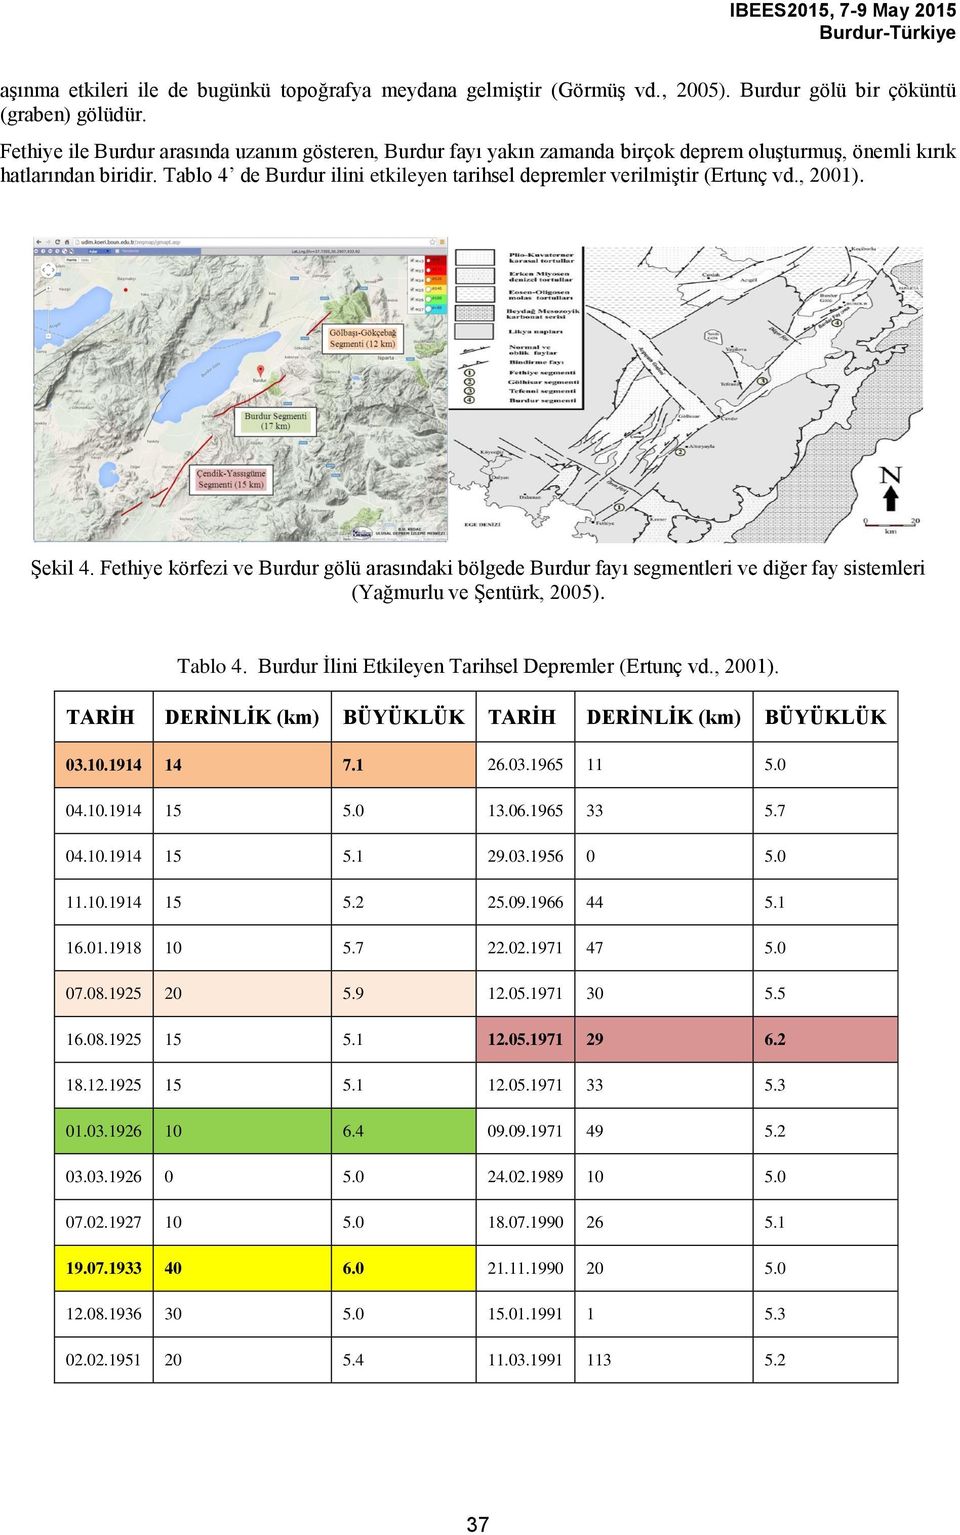 Tablo 4 de Burdur ilini etkileyen tarihsel depremler verilmiştir (Ertunç vd., 2001). Şekil 4.